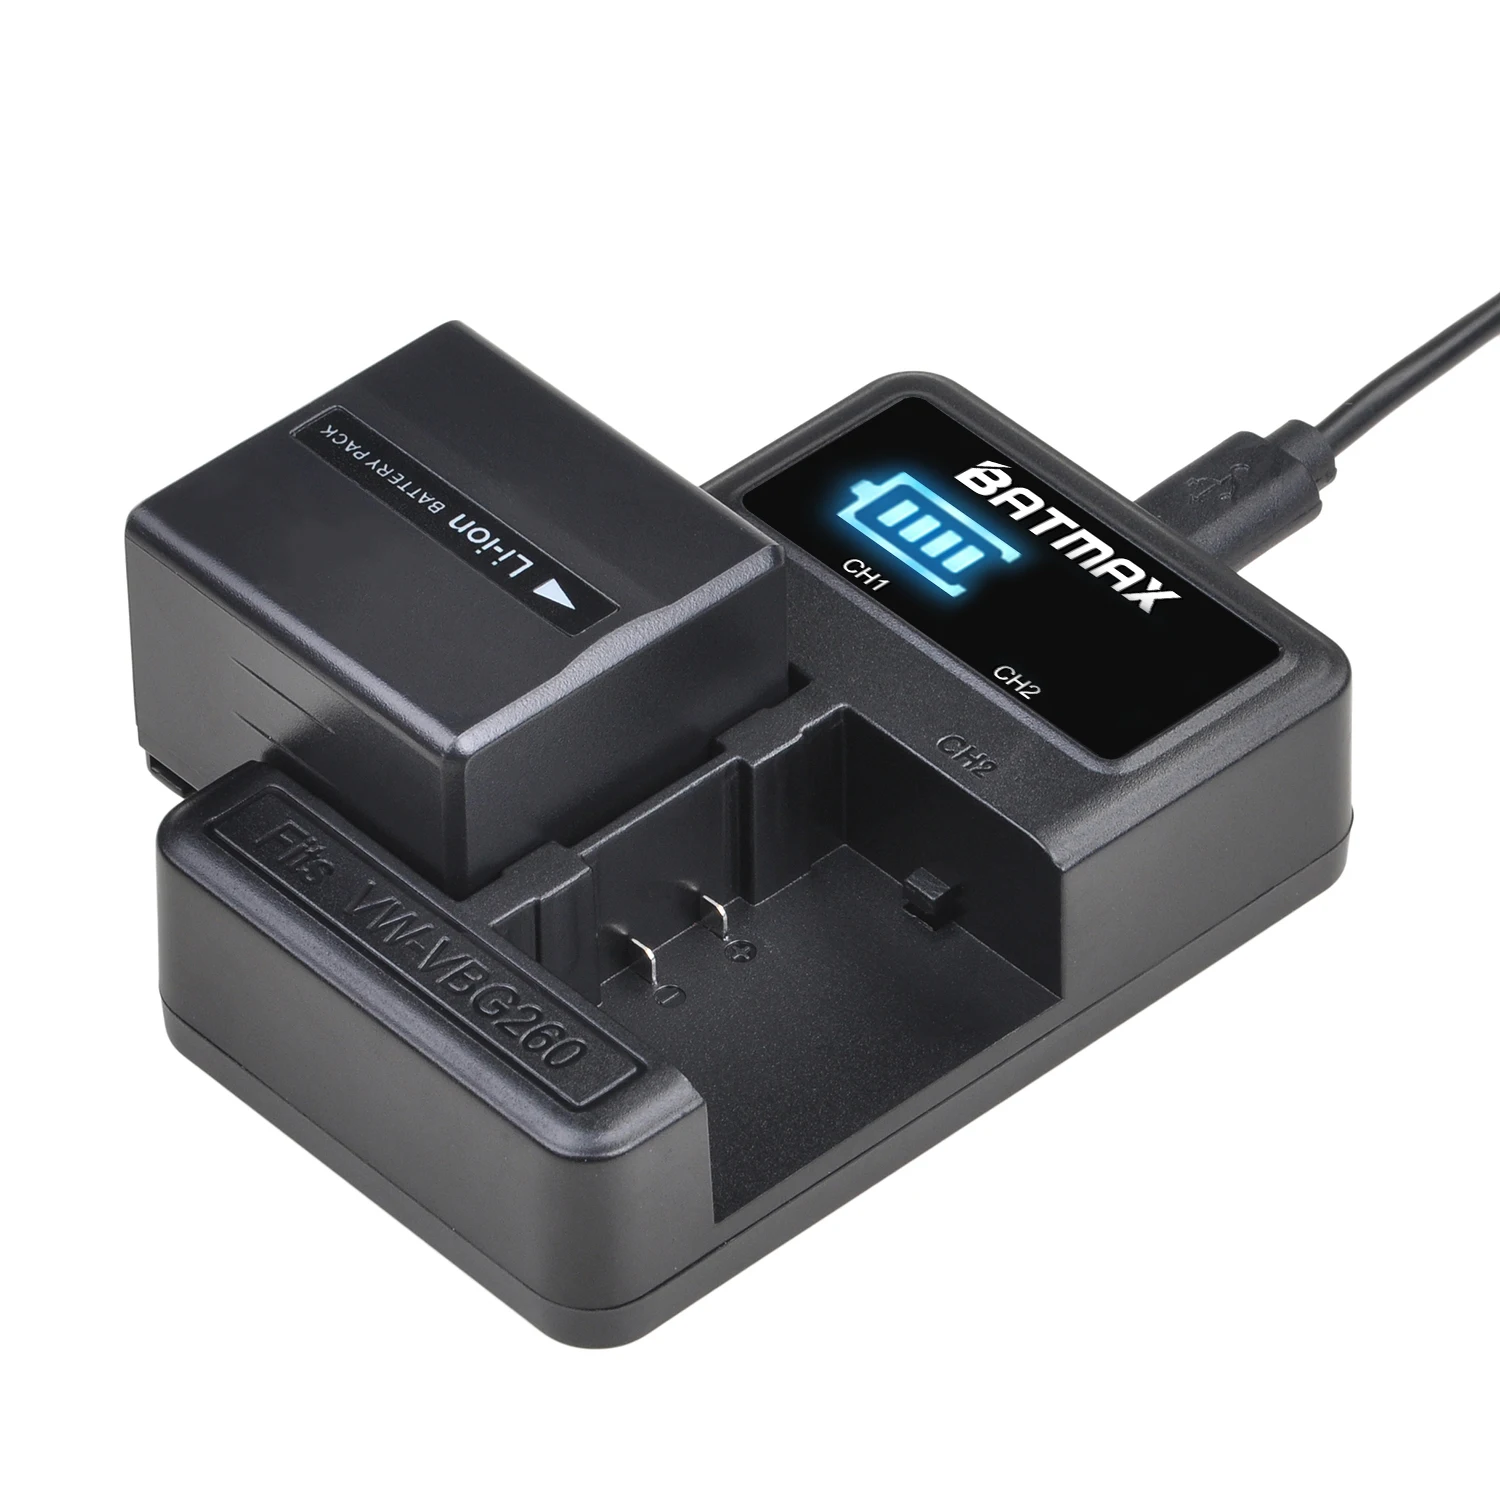 Аккумулятор 1400 мА · ч CGA-DU14 DU14 + двойное зарядное устройство USB со светодиодной